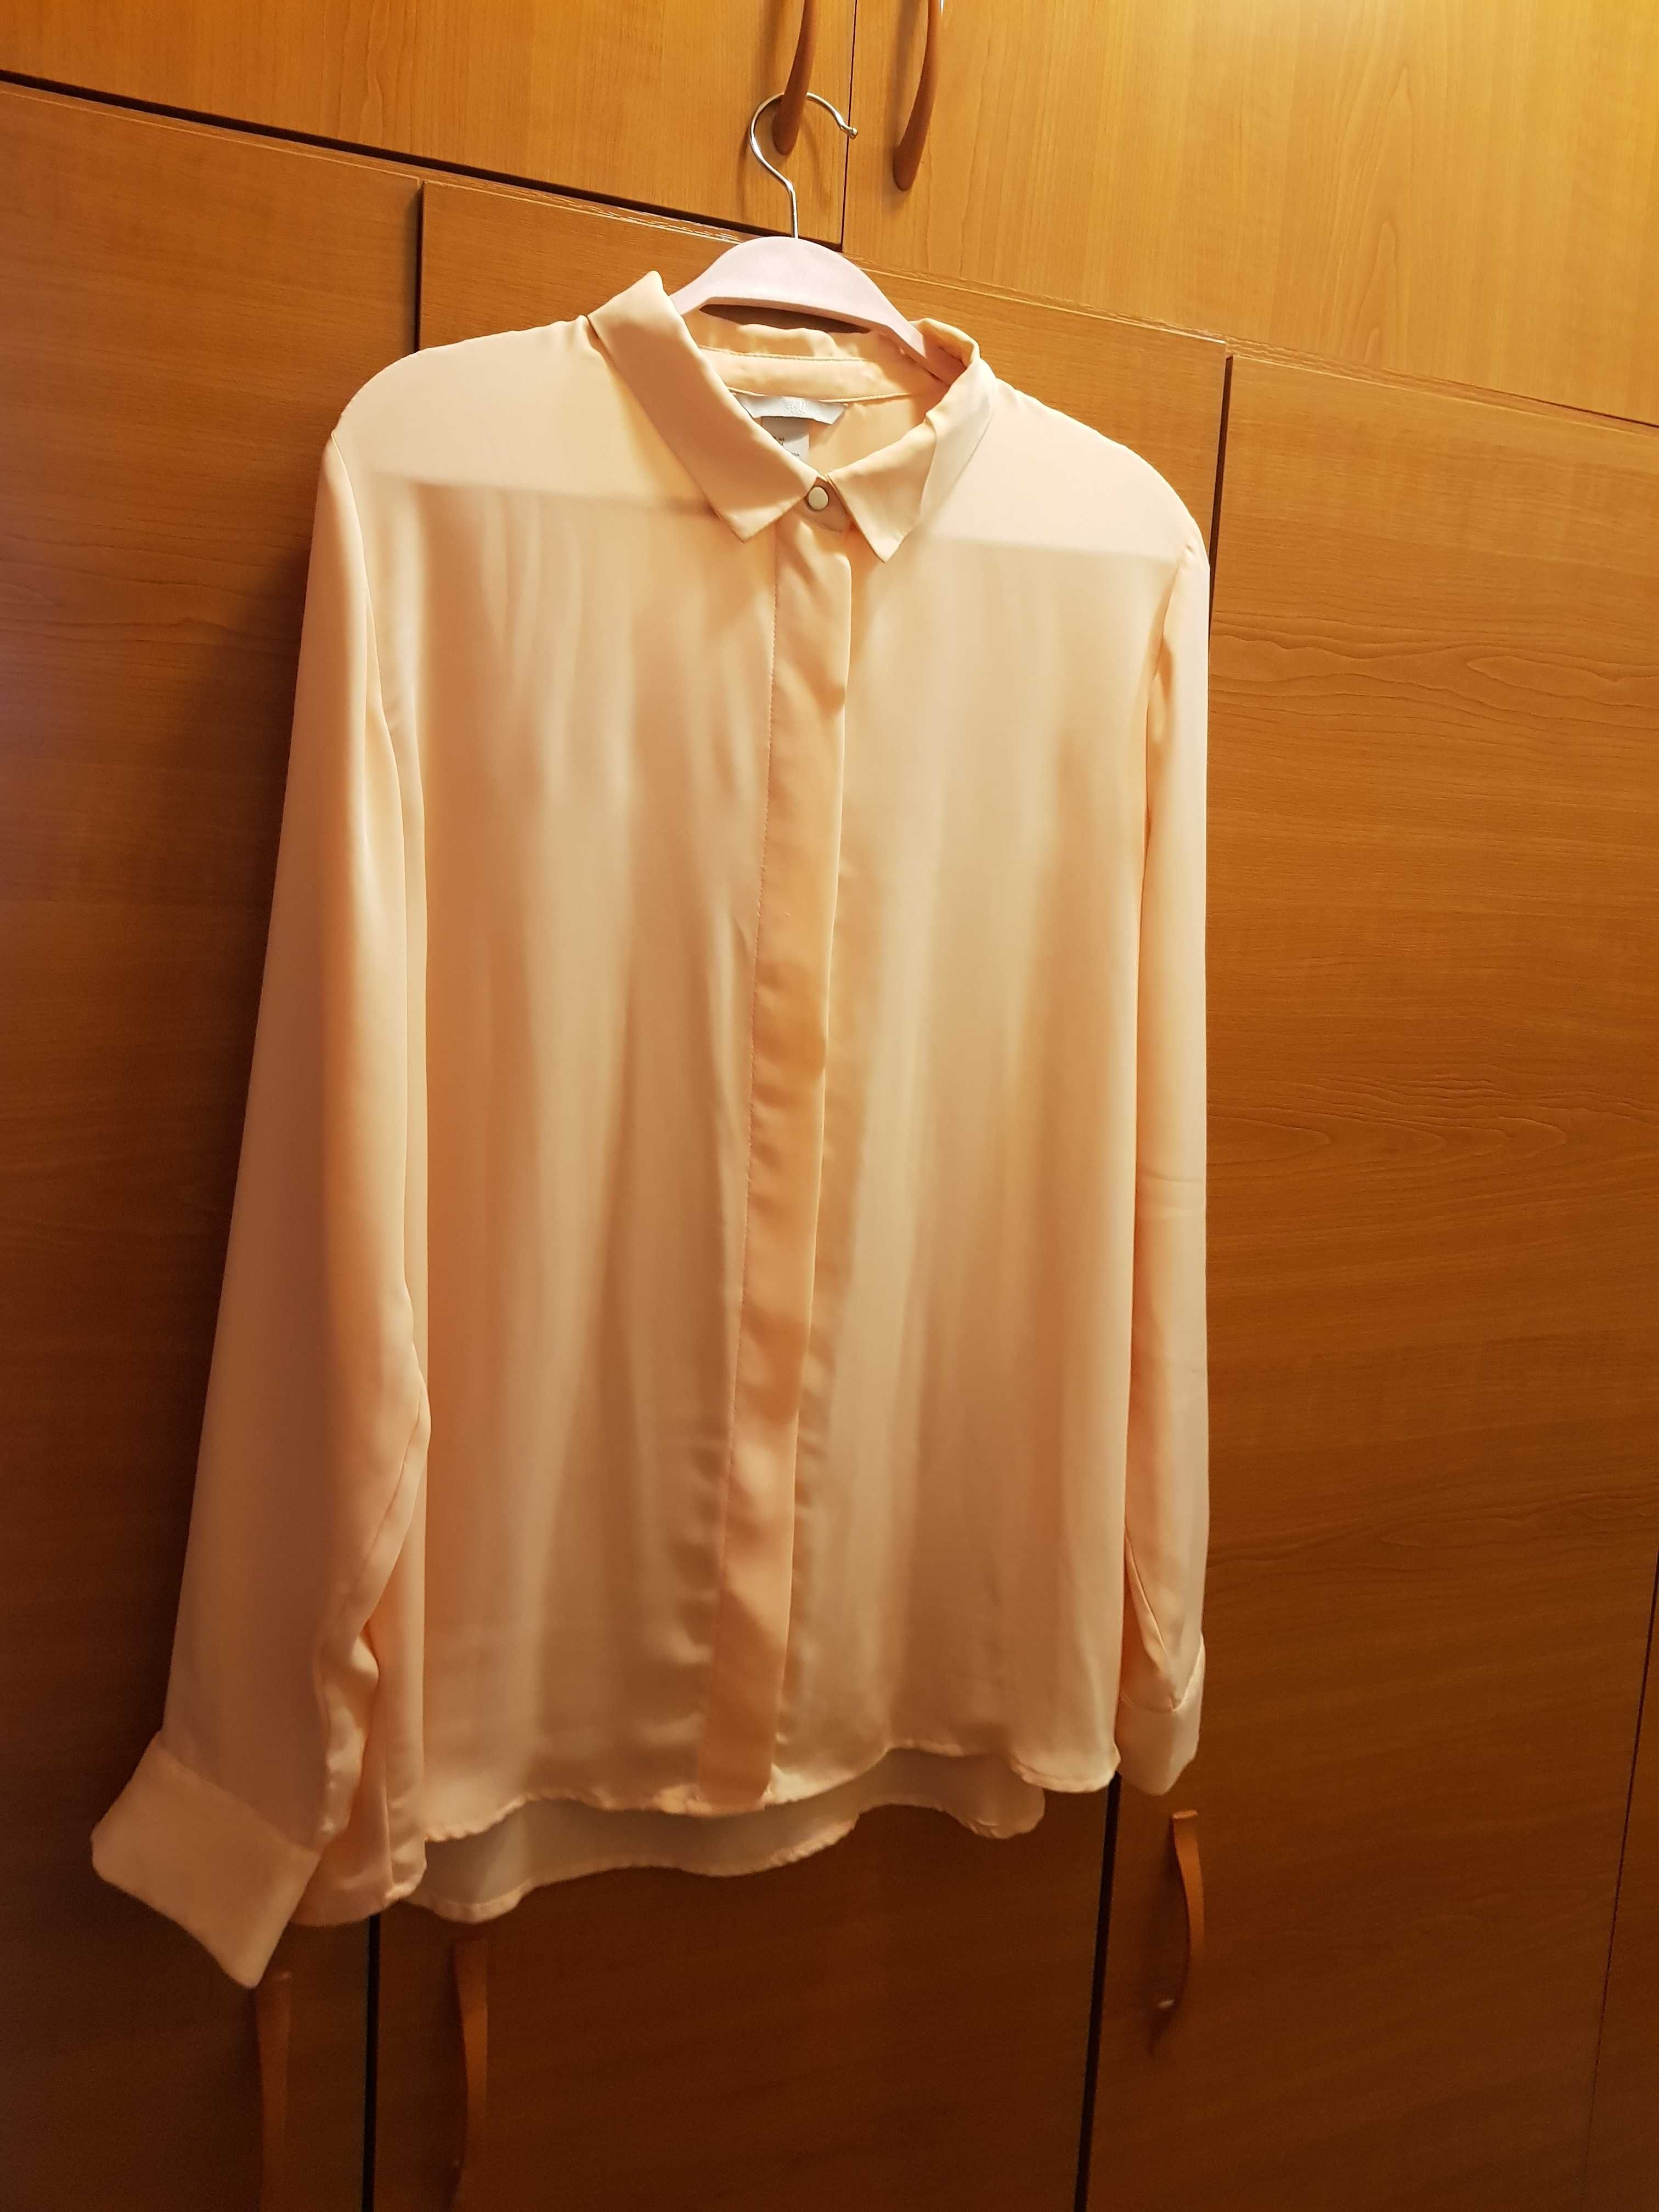 bluză damă tip cămașă H&M, mărimea 44 H&M